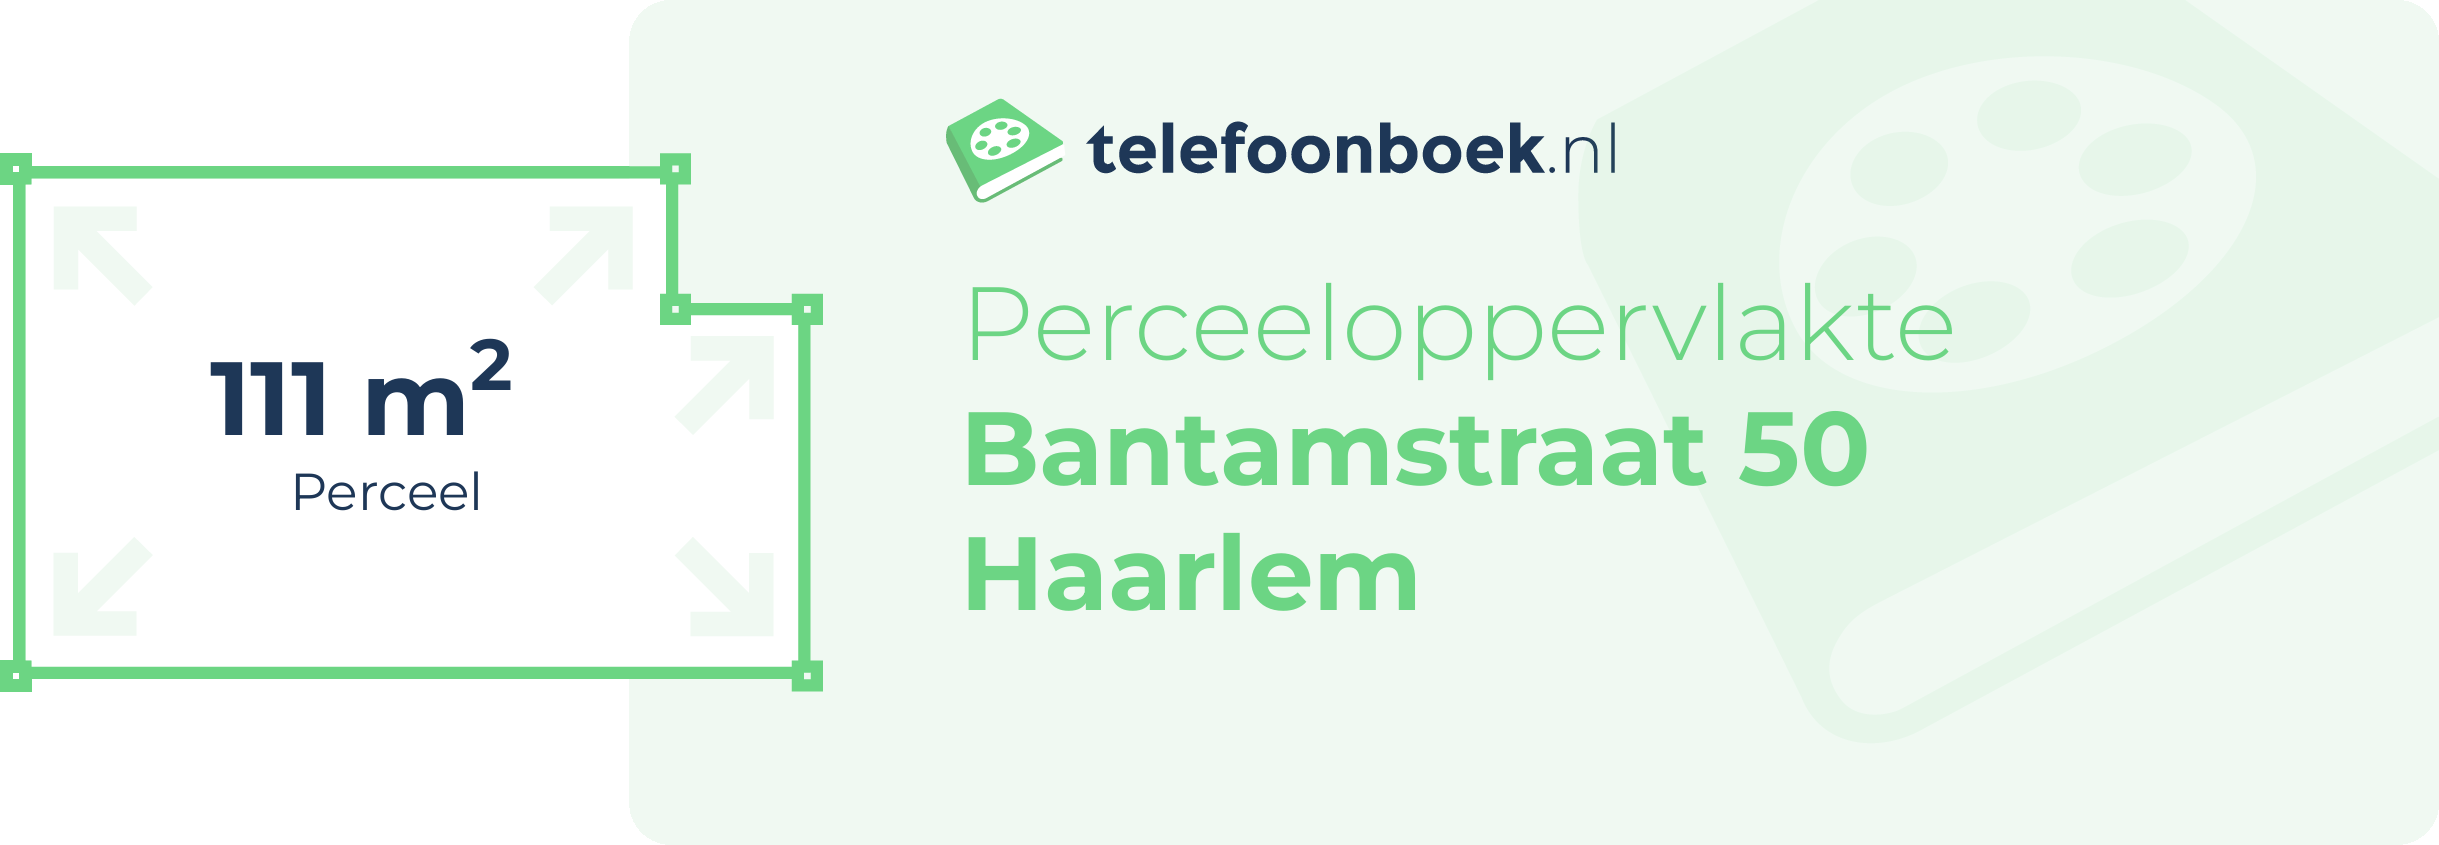 Perceeloppervlakte Bantamstraat 50 Haarlem